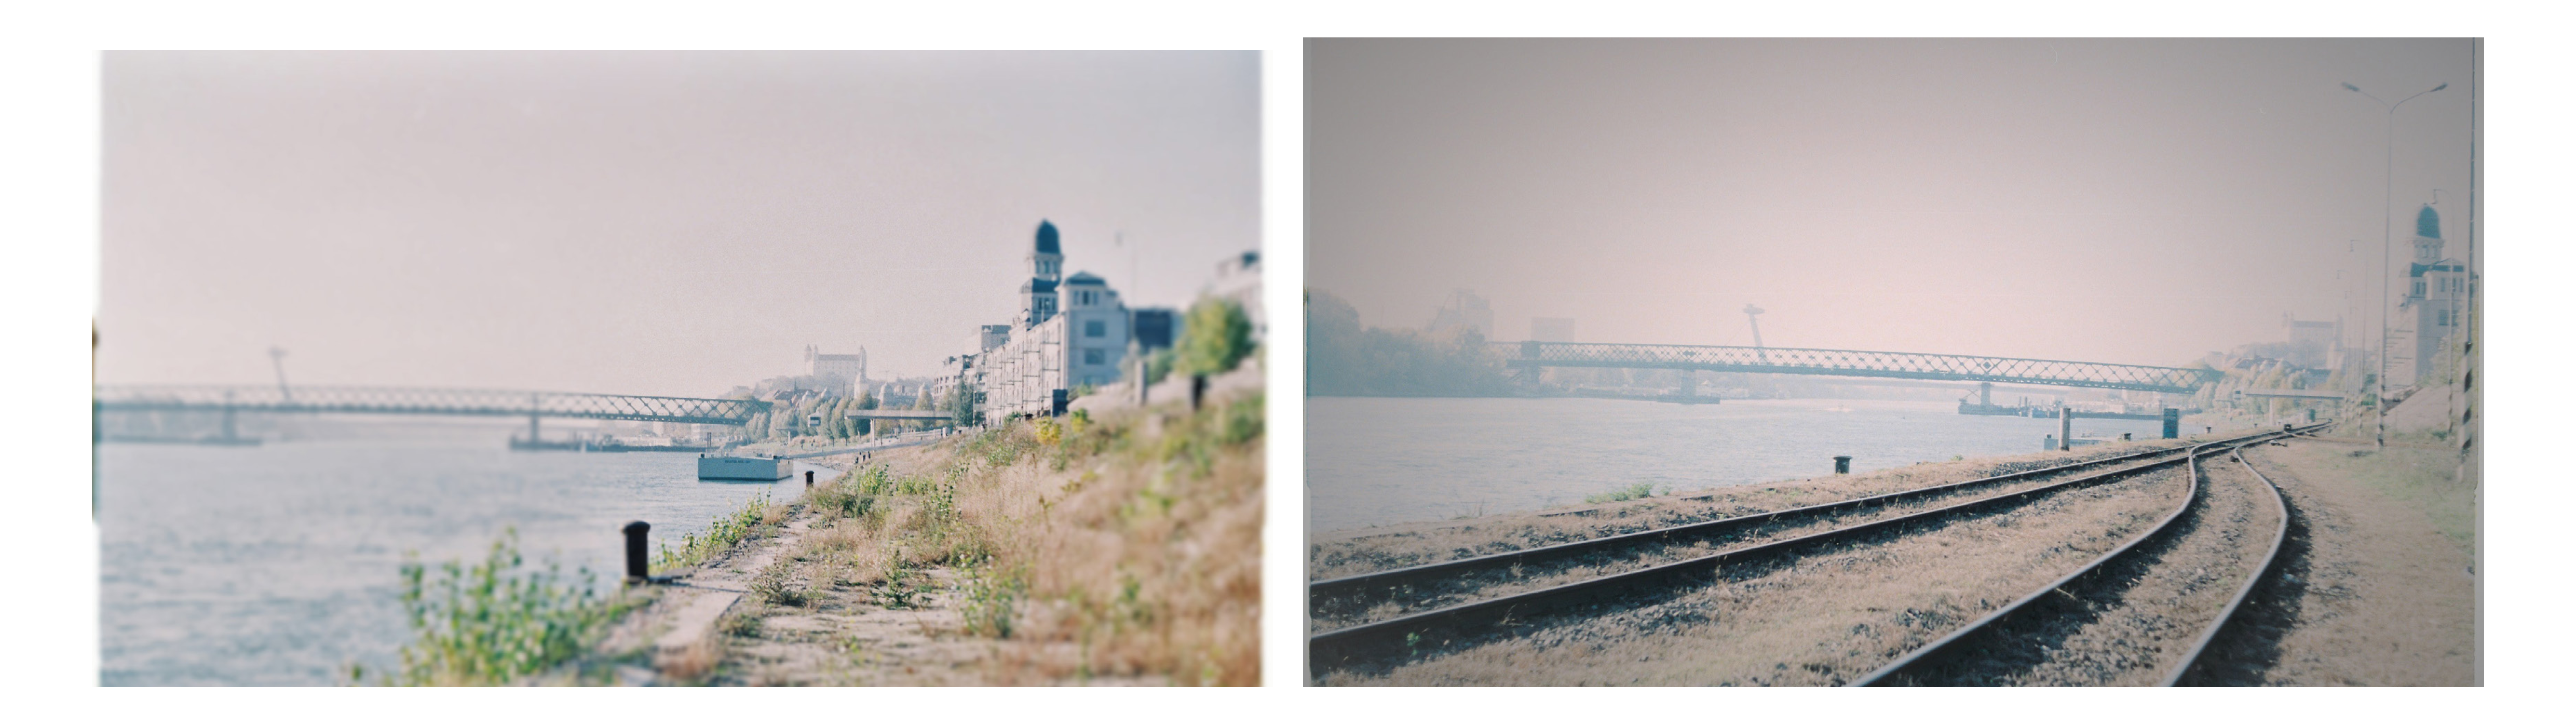 ČO: výhľad, vizuálny kontakt, dotyk s riekou aj na mestskej strane KDE: pokračovanie mestského nábrežia (vľavo). ČO:  „keeping the memory of space“, industriál, spojitosť v úrovni promenády, oživenie promenády. KDE: pokračovanie mestskej promenády (vpravo)